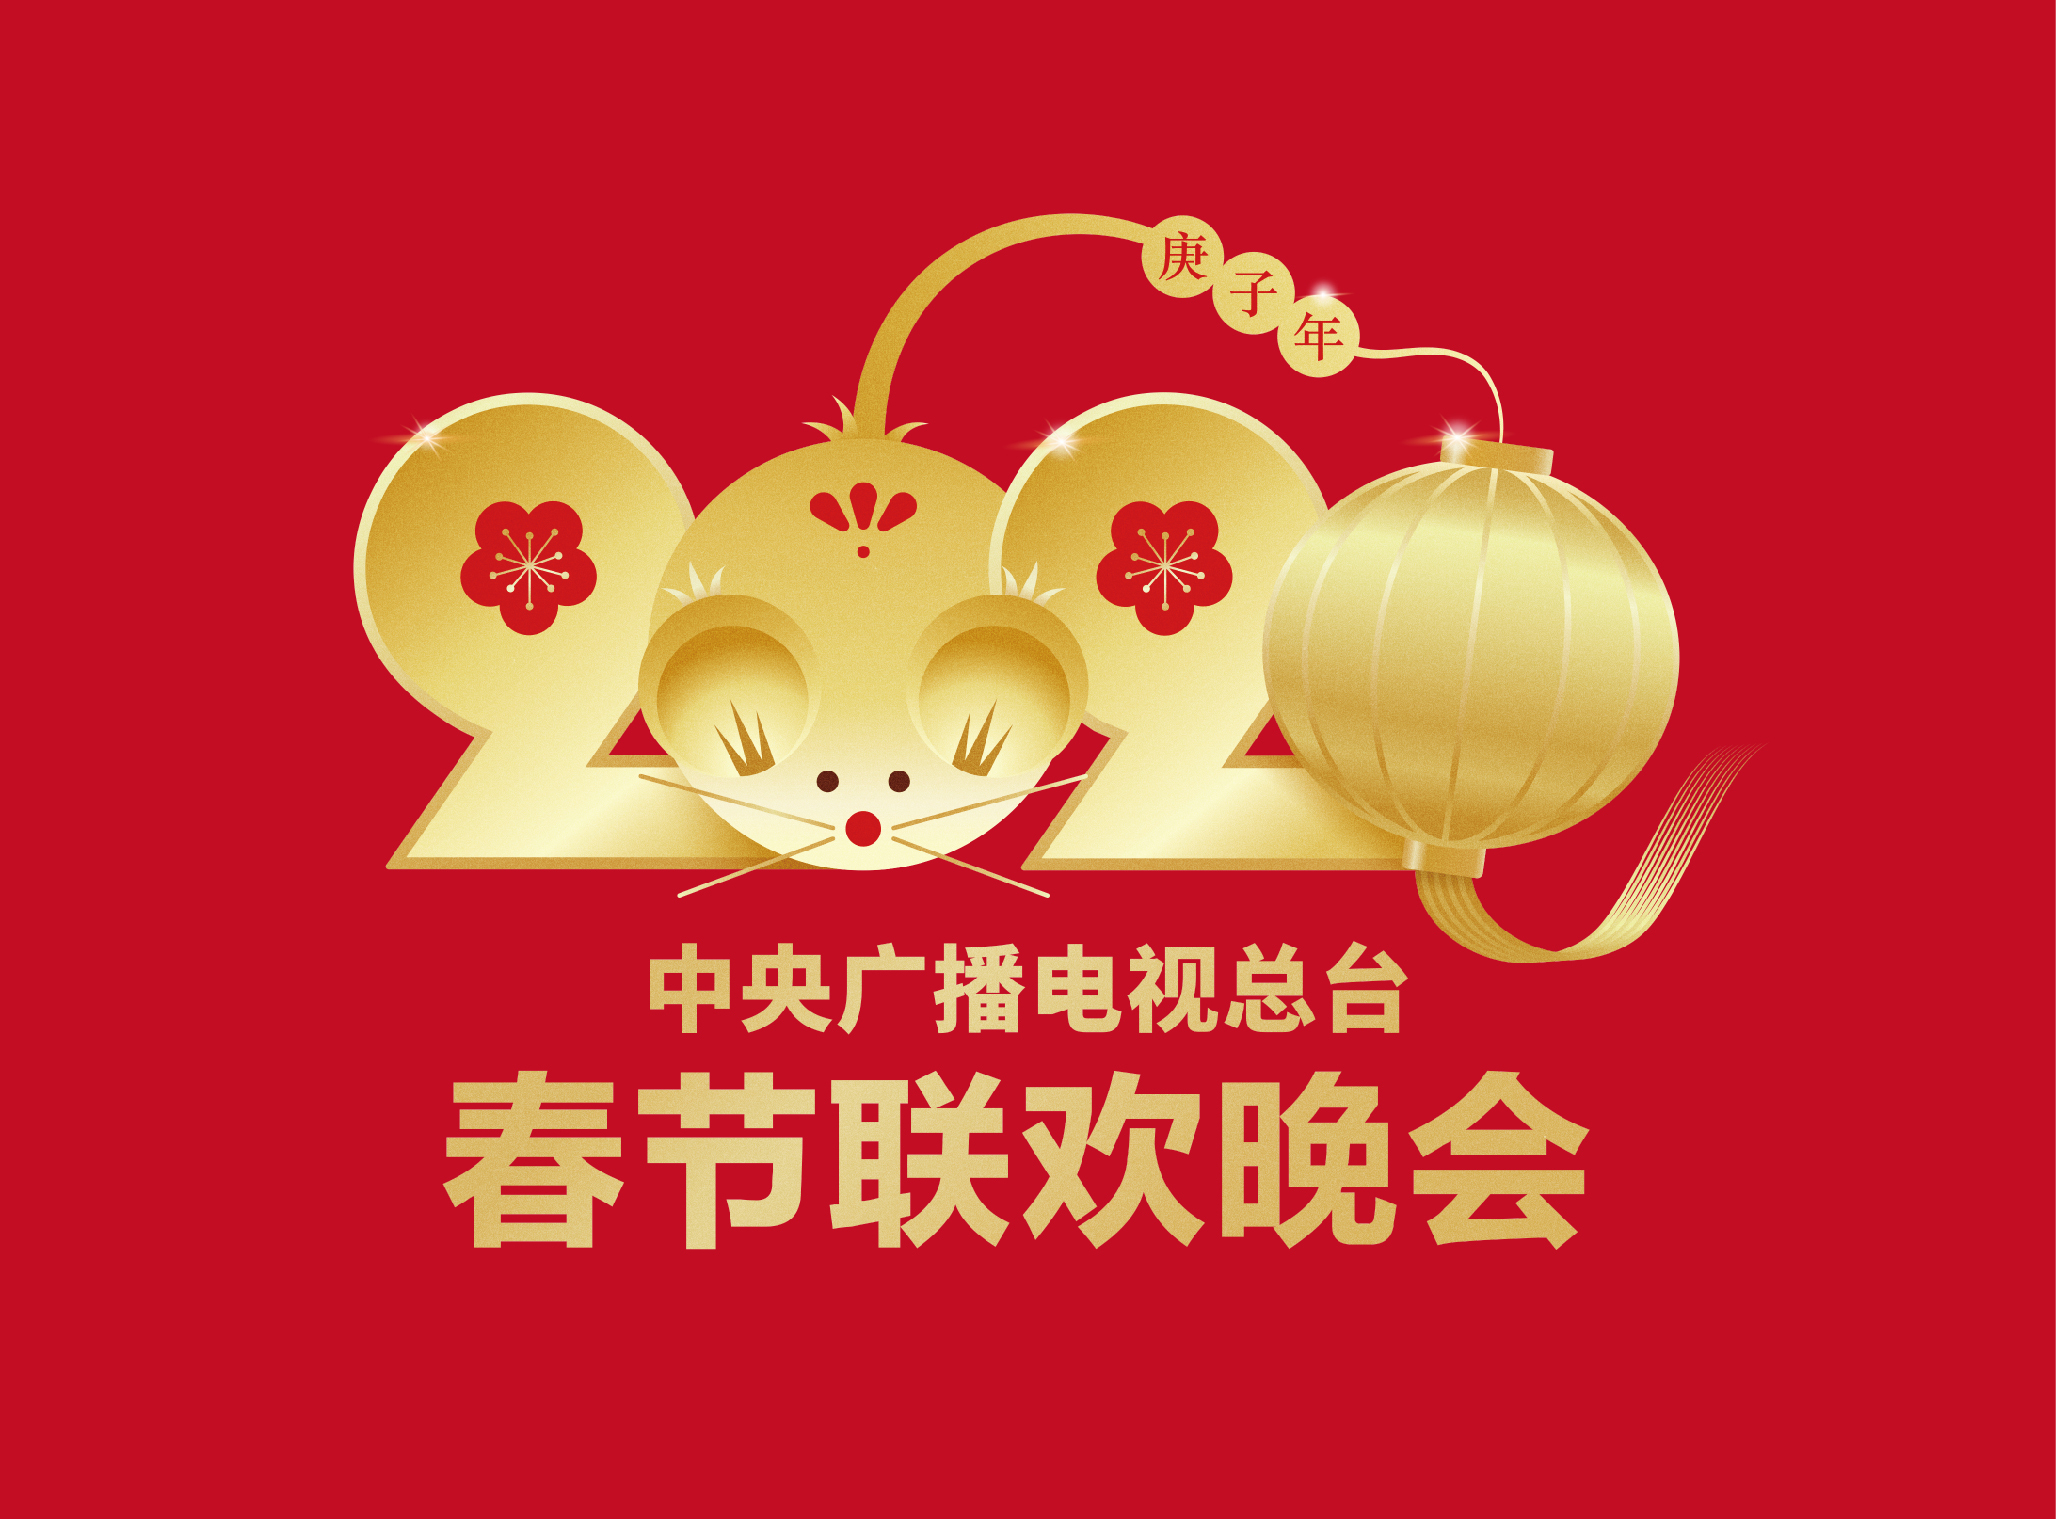 中央广播电视总台发布今年春节联欢晚会版权声明